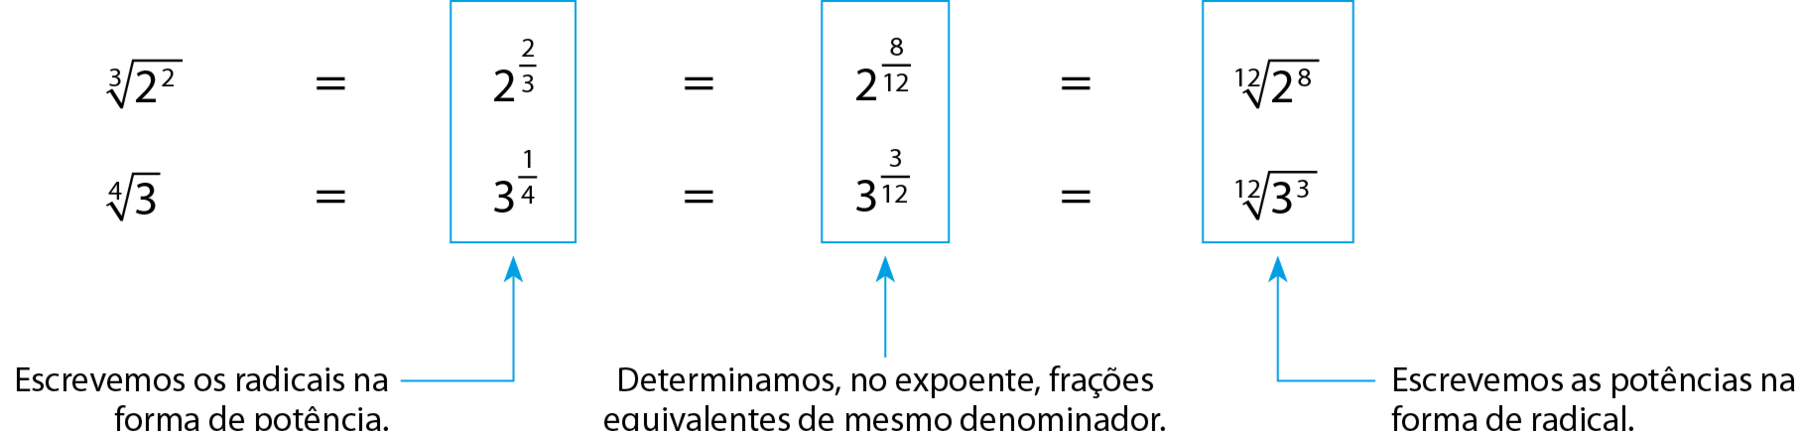 Esquema. raiz cubica de 2 ao quadrado, igual a, 2 elevado a 2 terços, igual a, 2 elevado a 8, 12 avos, igual a, raiz 12 de 2 elevado a 8. raiz quarta de 3, igual a, 3 elevado a 1 quarto, igual a, 3 elevado a 3, 12 avos, igual a, raiz 12 de 3 elevado ao cubo. Seta azul apontando para um reticulado que destaca 2 elevado a 2 terços e 3 elevado a 1 quarto com a indicação: Escrevemos os radicais na forma de potência. Seta azul apontando para um reticulado que destaca 2 elevado a 8, 12 avos e 3 elevado a 3, 12 avos com a indicação: Determinamos, no expoente, frações equivalentes de mesmo denominador. Seta azul apontando para um reticulado que destaca raiz 12 de 2 elevado a 8 e raiz 12 de 3 elevado ao cubo com indicação: Escrevemos as potências na forma de radical.